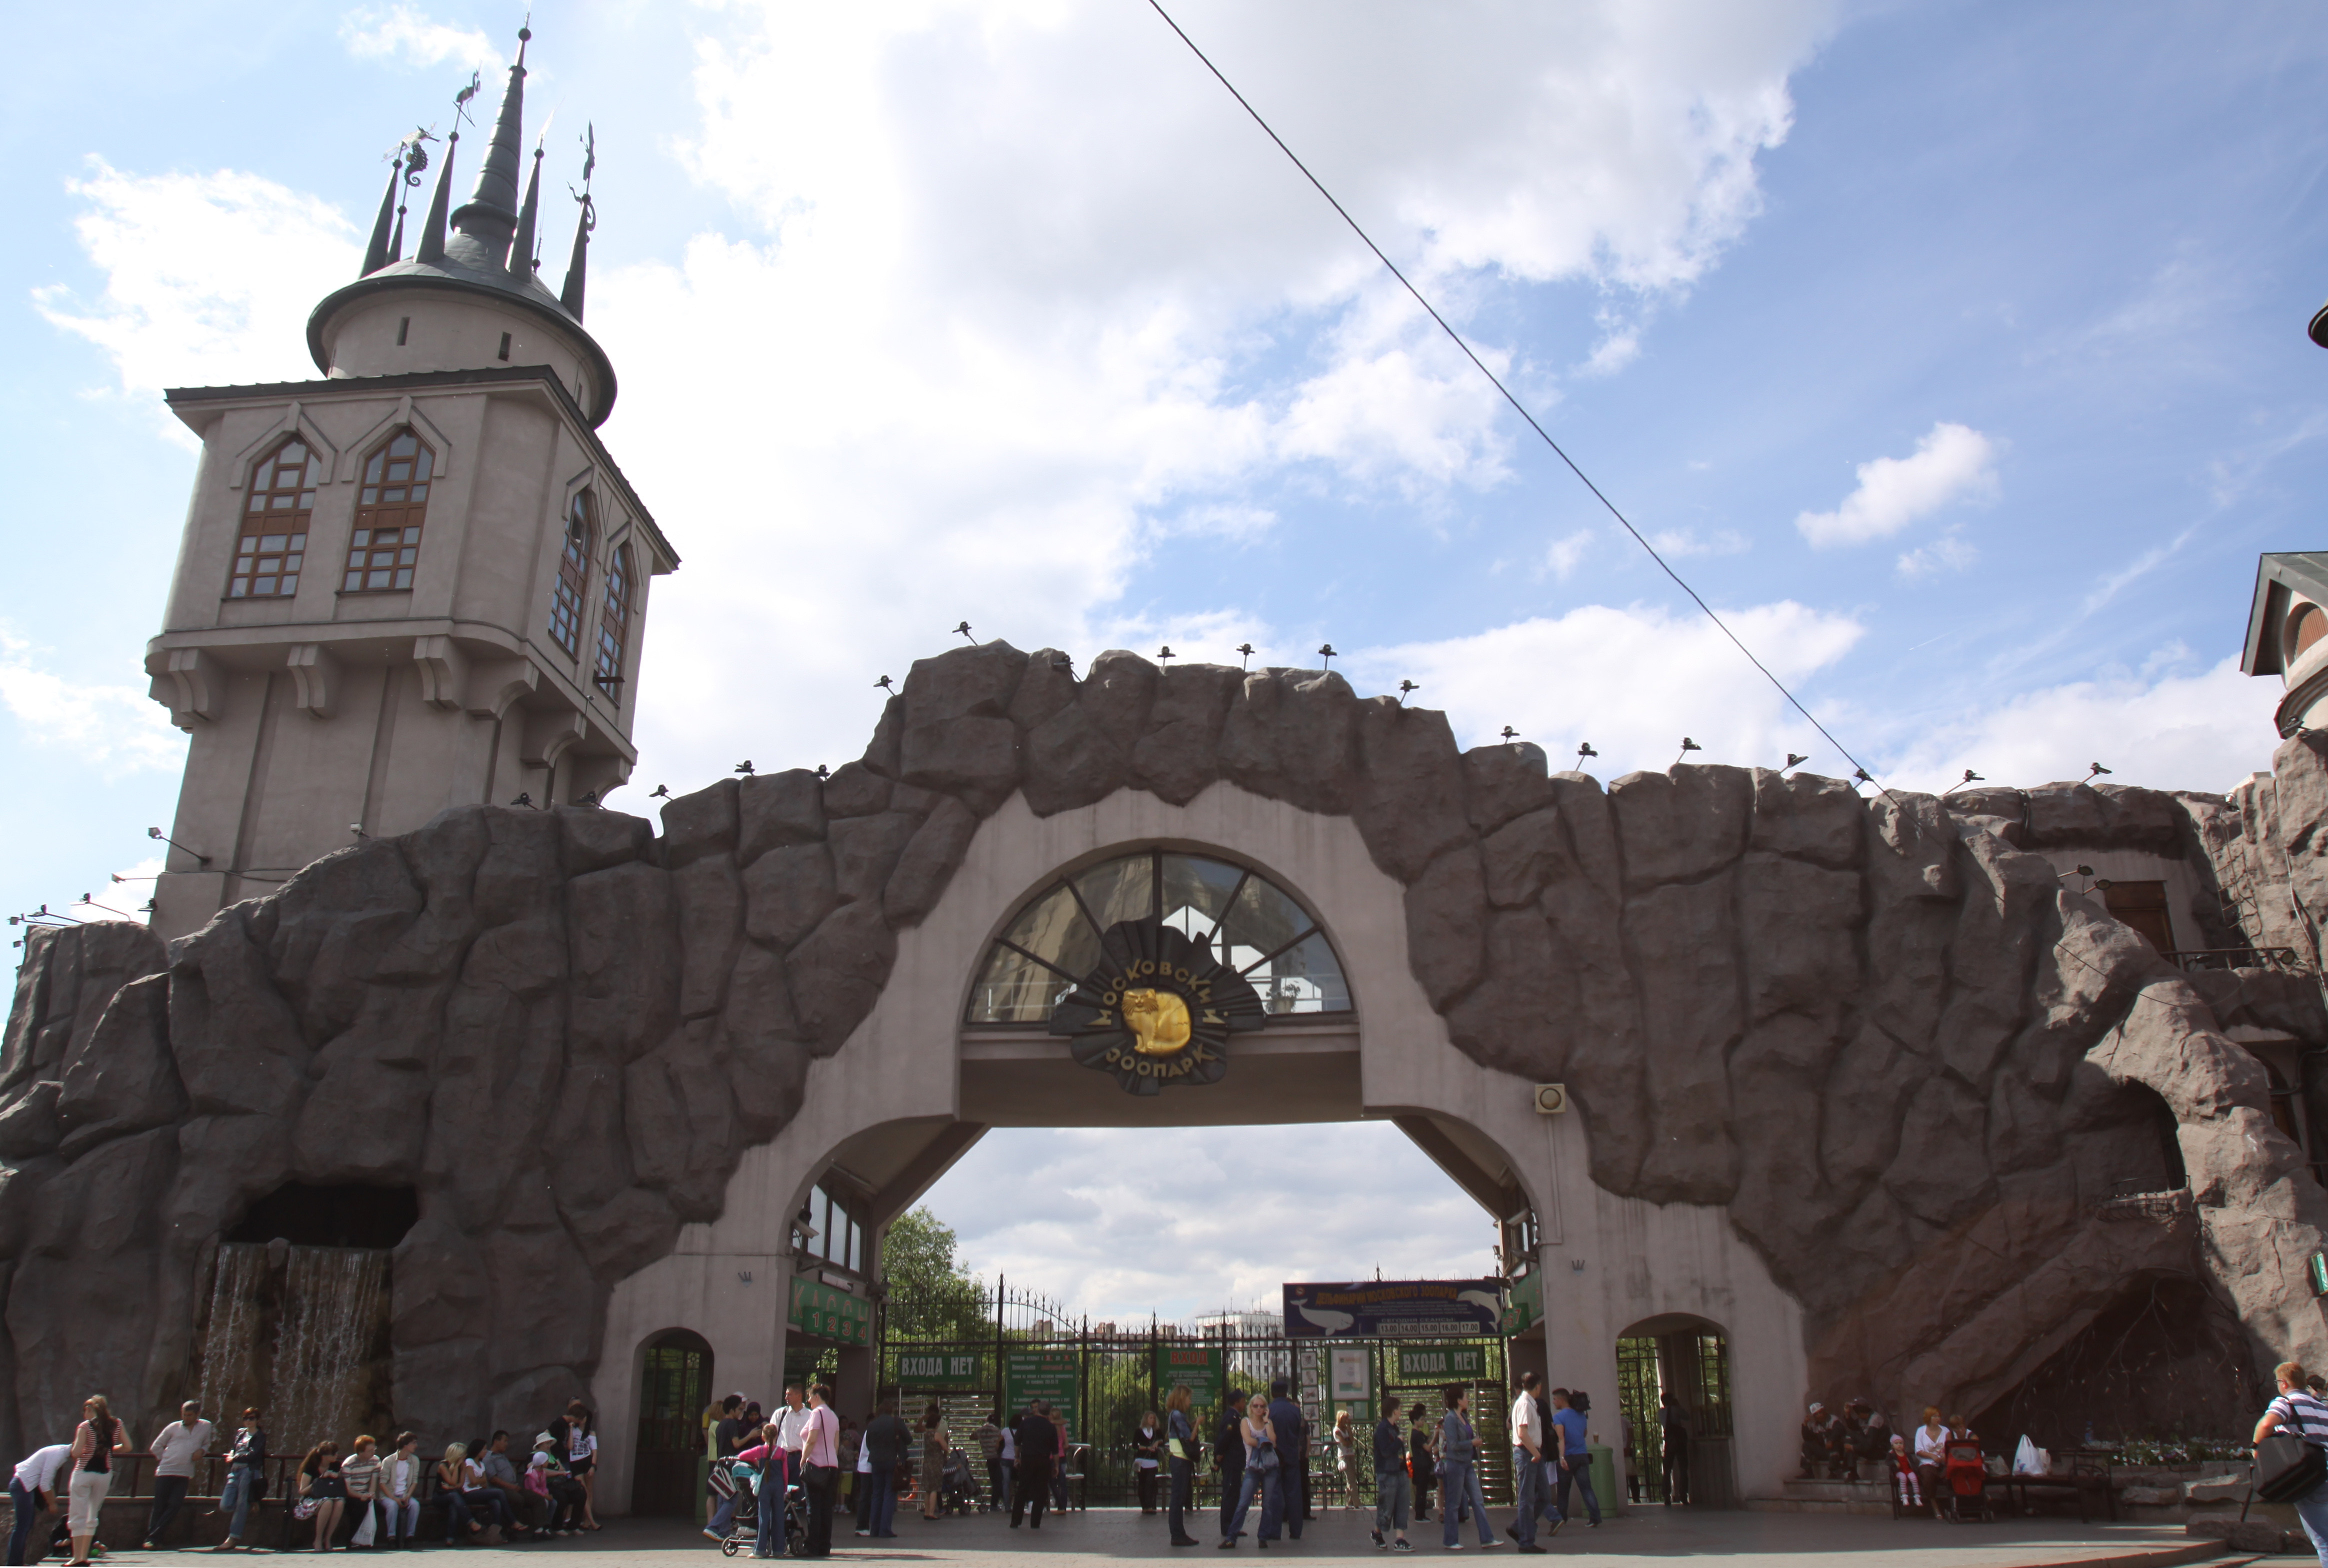 московский зоопарк после реконструкции